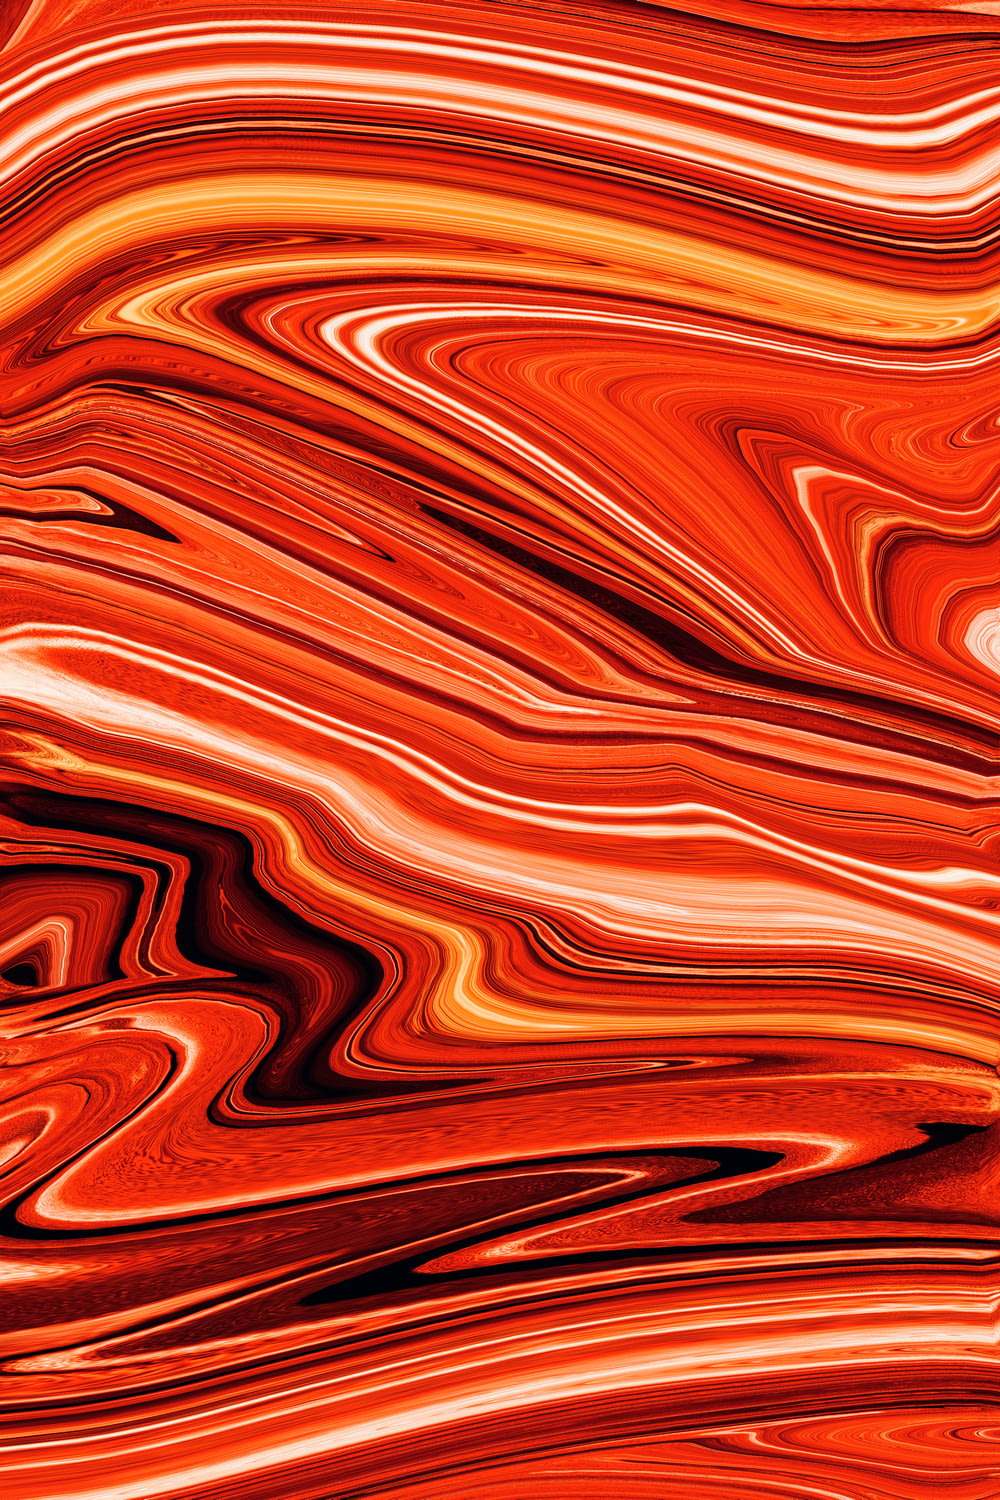 Un fond orange et rouge avec un design ondulé